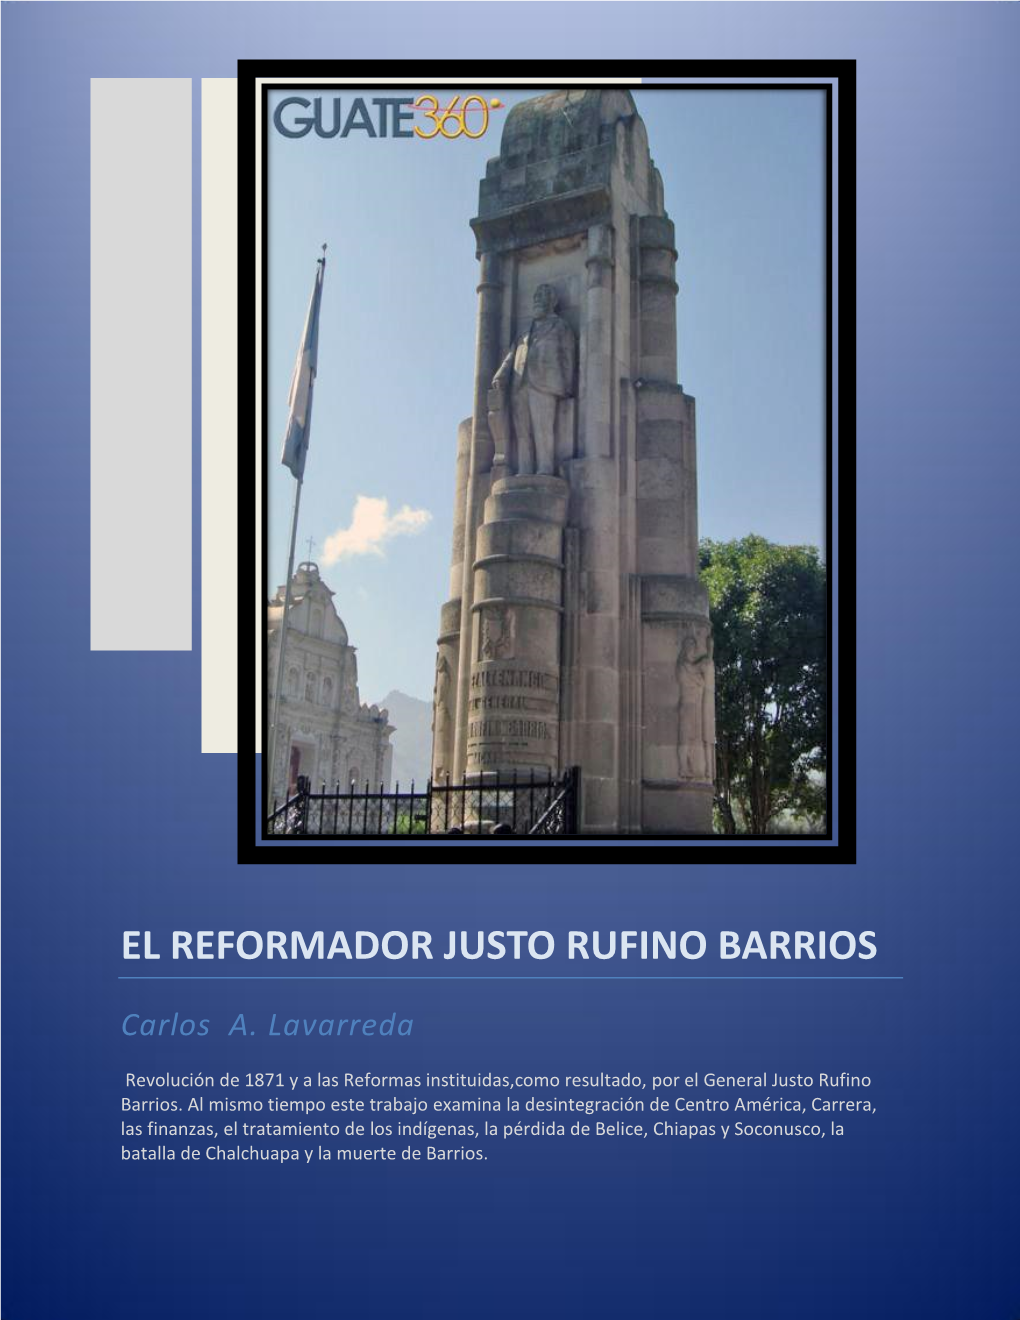 El Reformador Justo Rufino Barrios